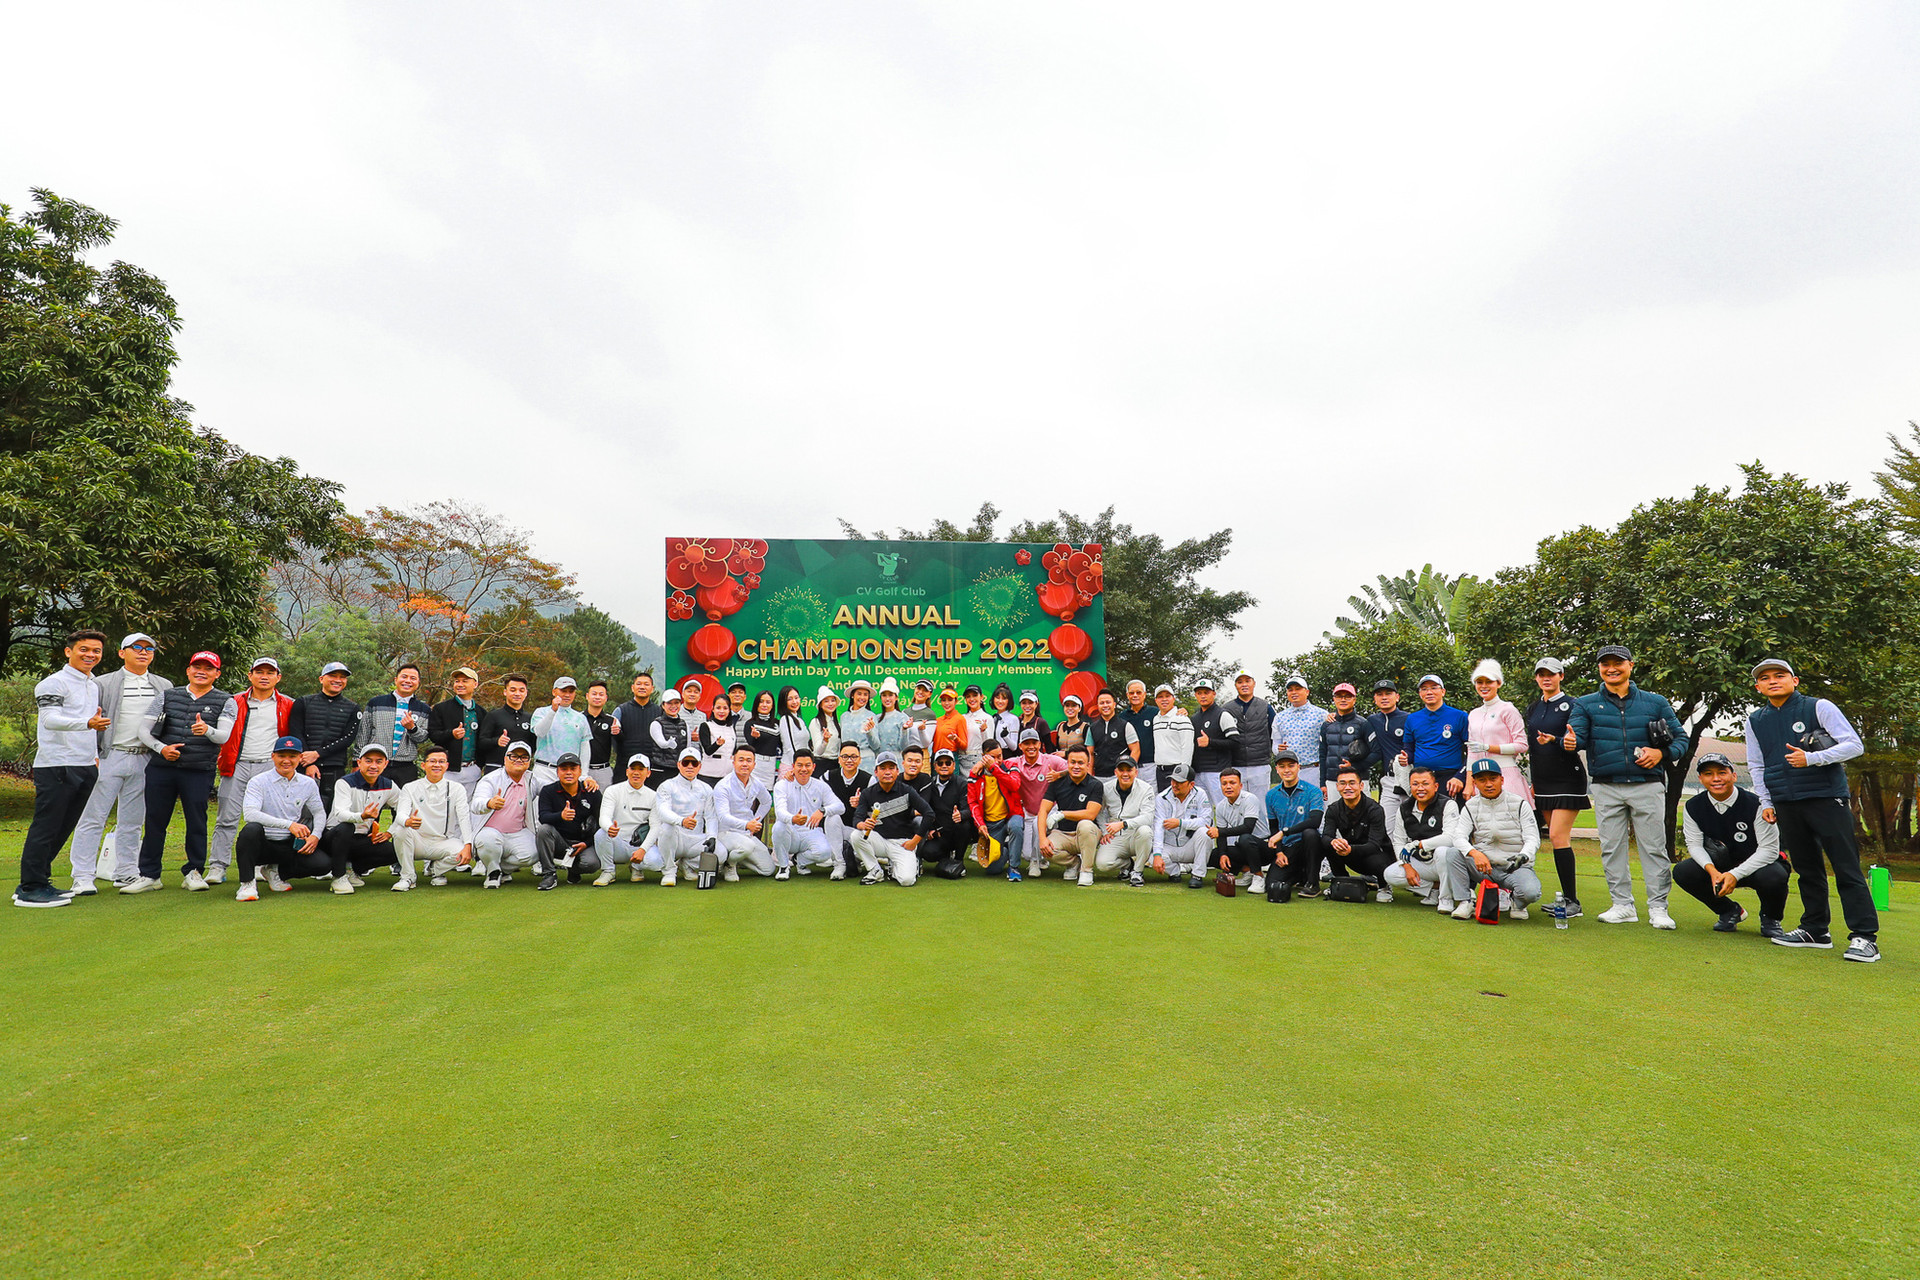 Golfer Đặng Minh Hải đoạt cúp tại giải “Annual Championship 2022” của CV Golf Club - Ảnh 1.